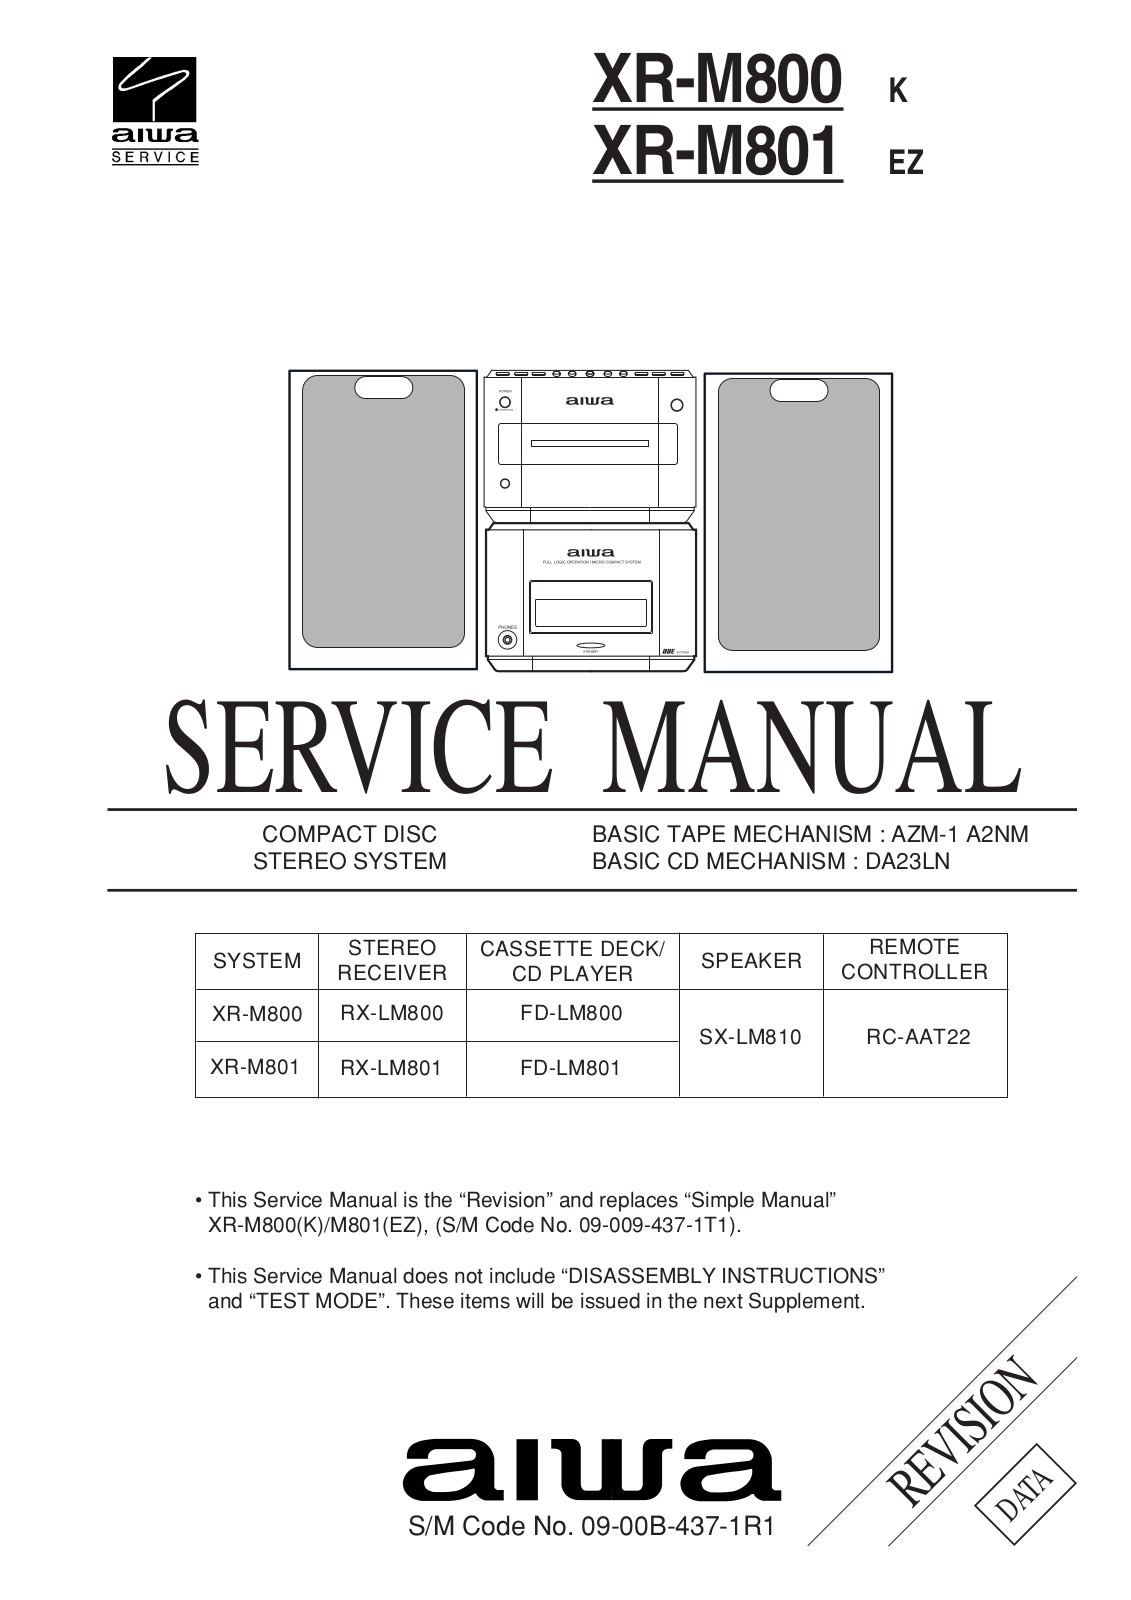 Aiwa XR-M800, XR-M801 Service Manual